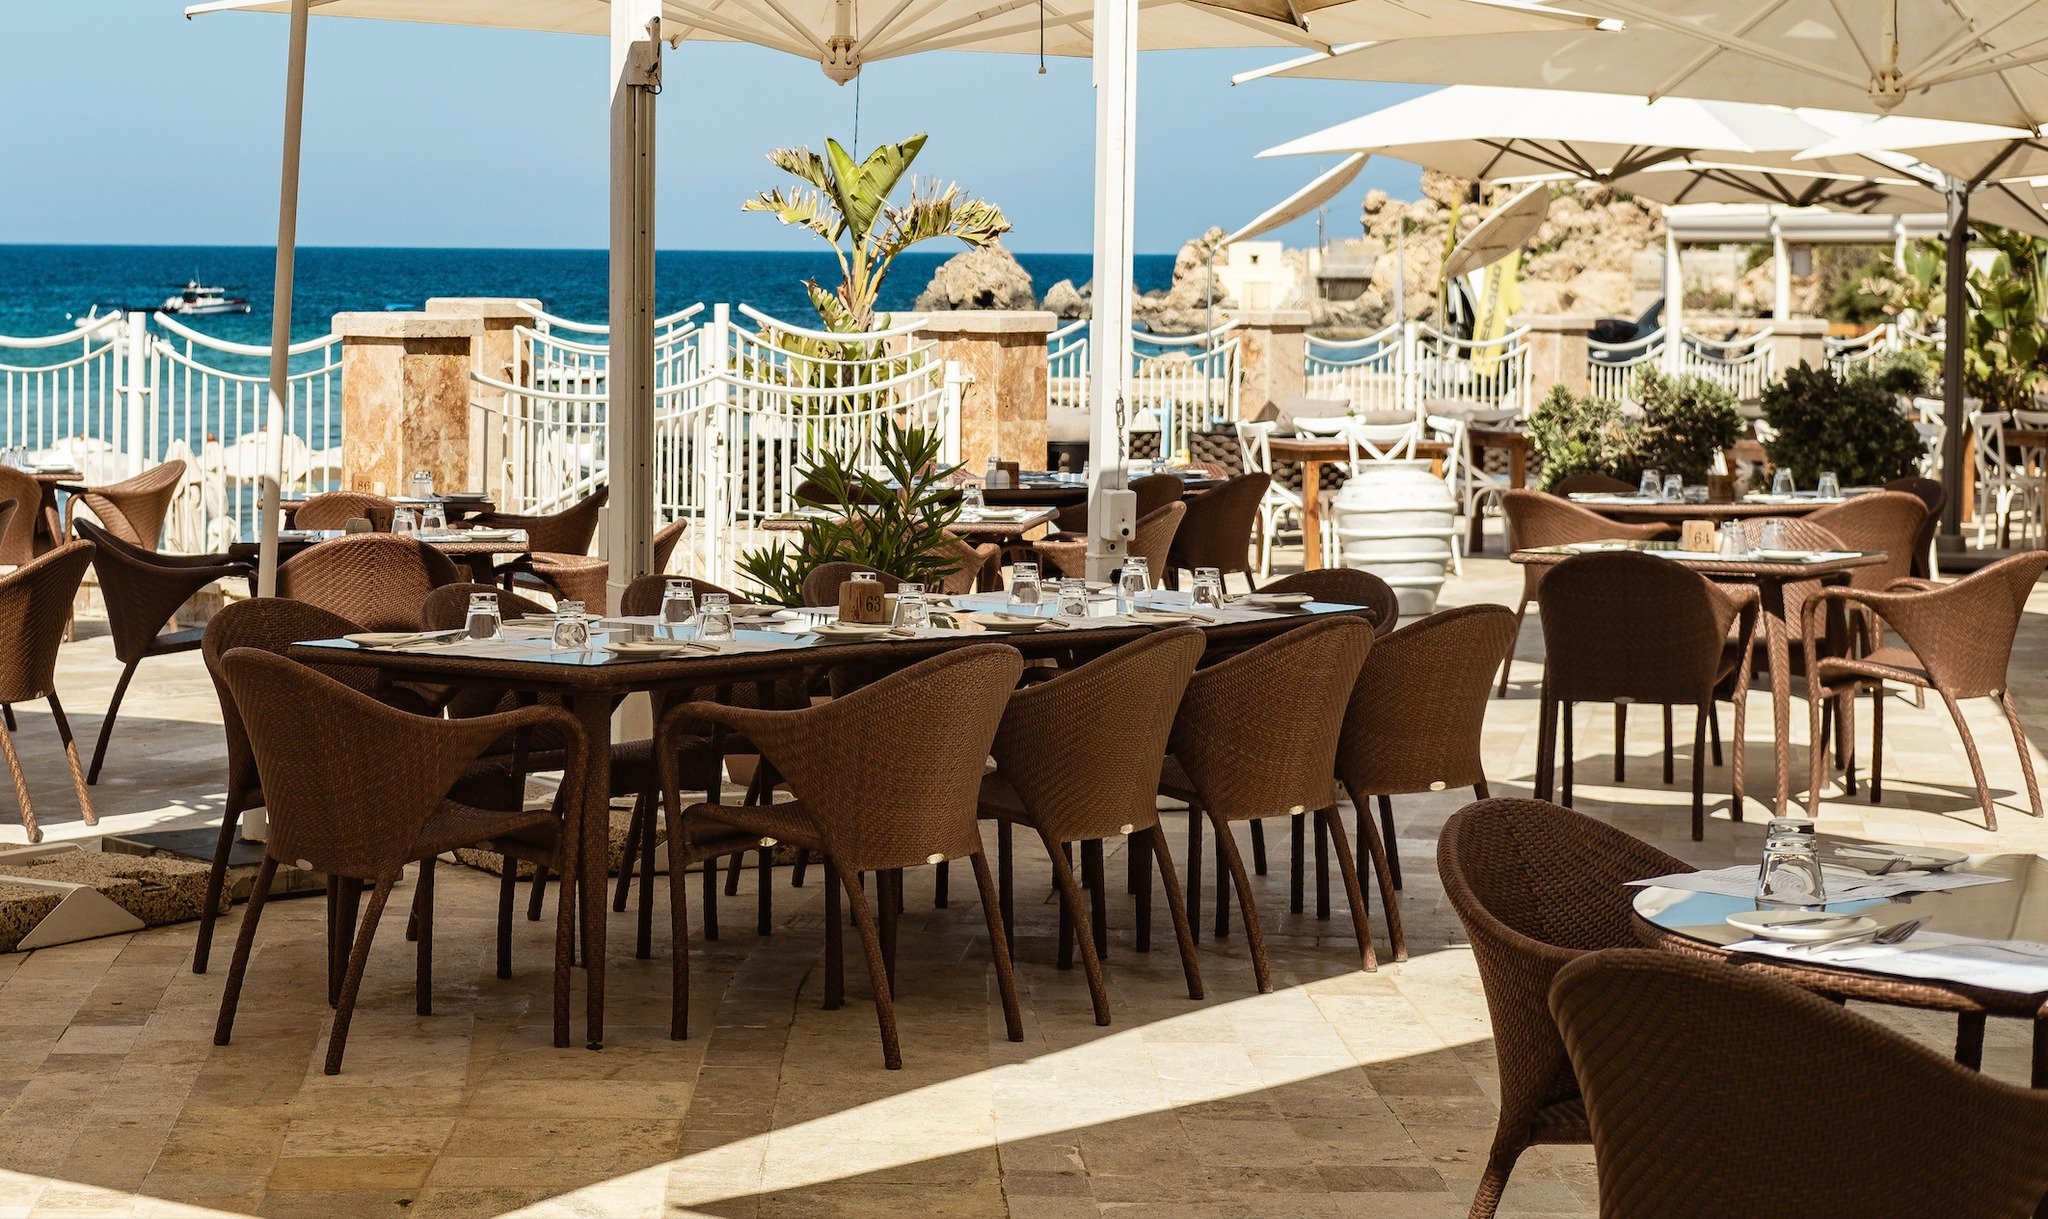 Agliolio - Malta restaurants with a view